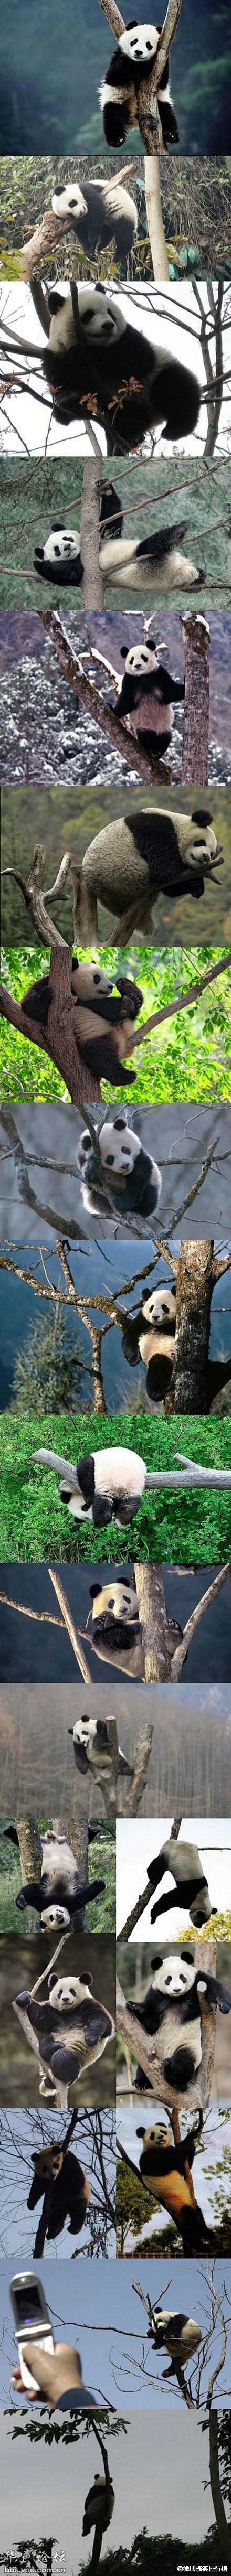 熊猫遇到树，各种惊天地泣鬼神的姿势。。。